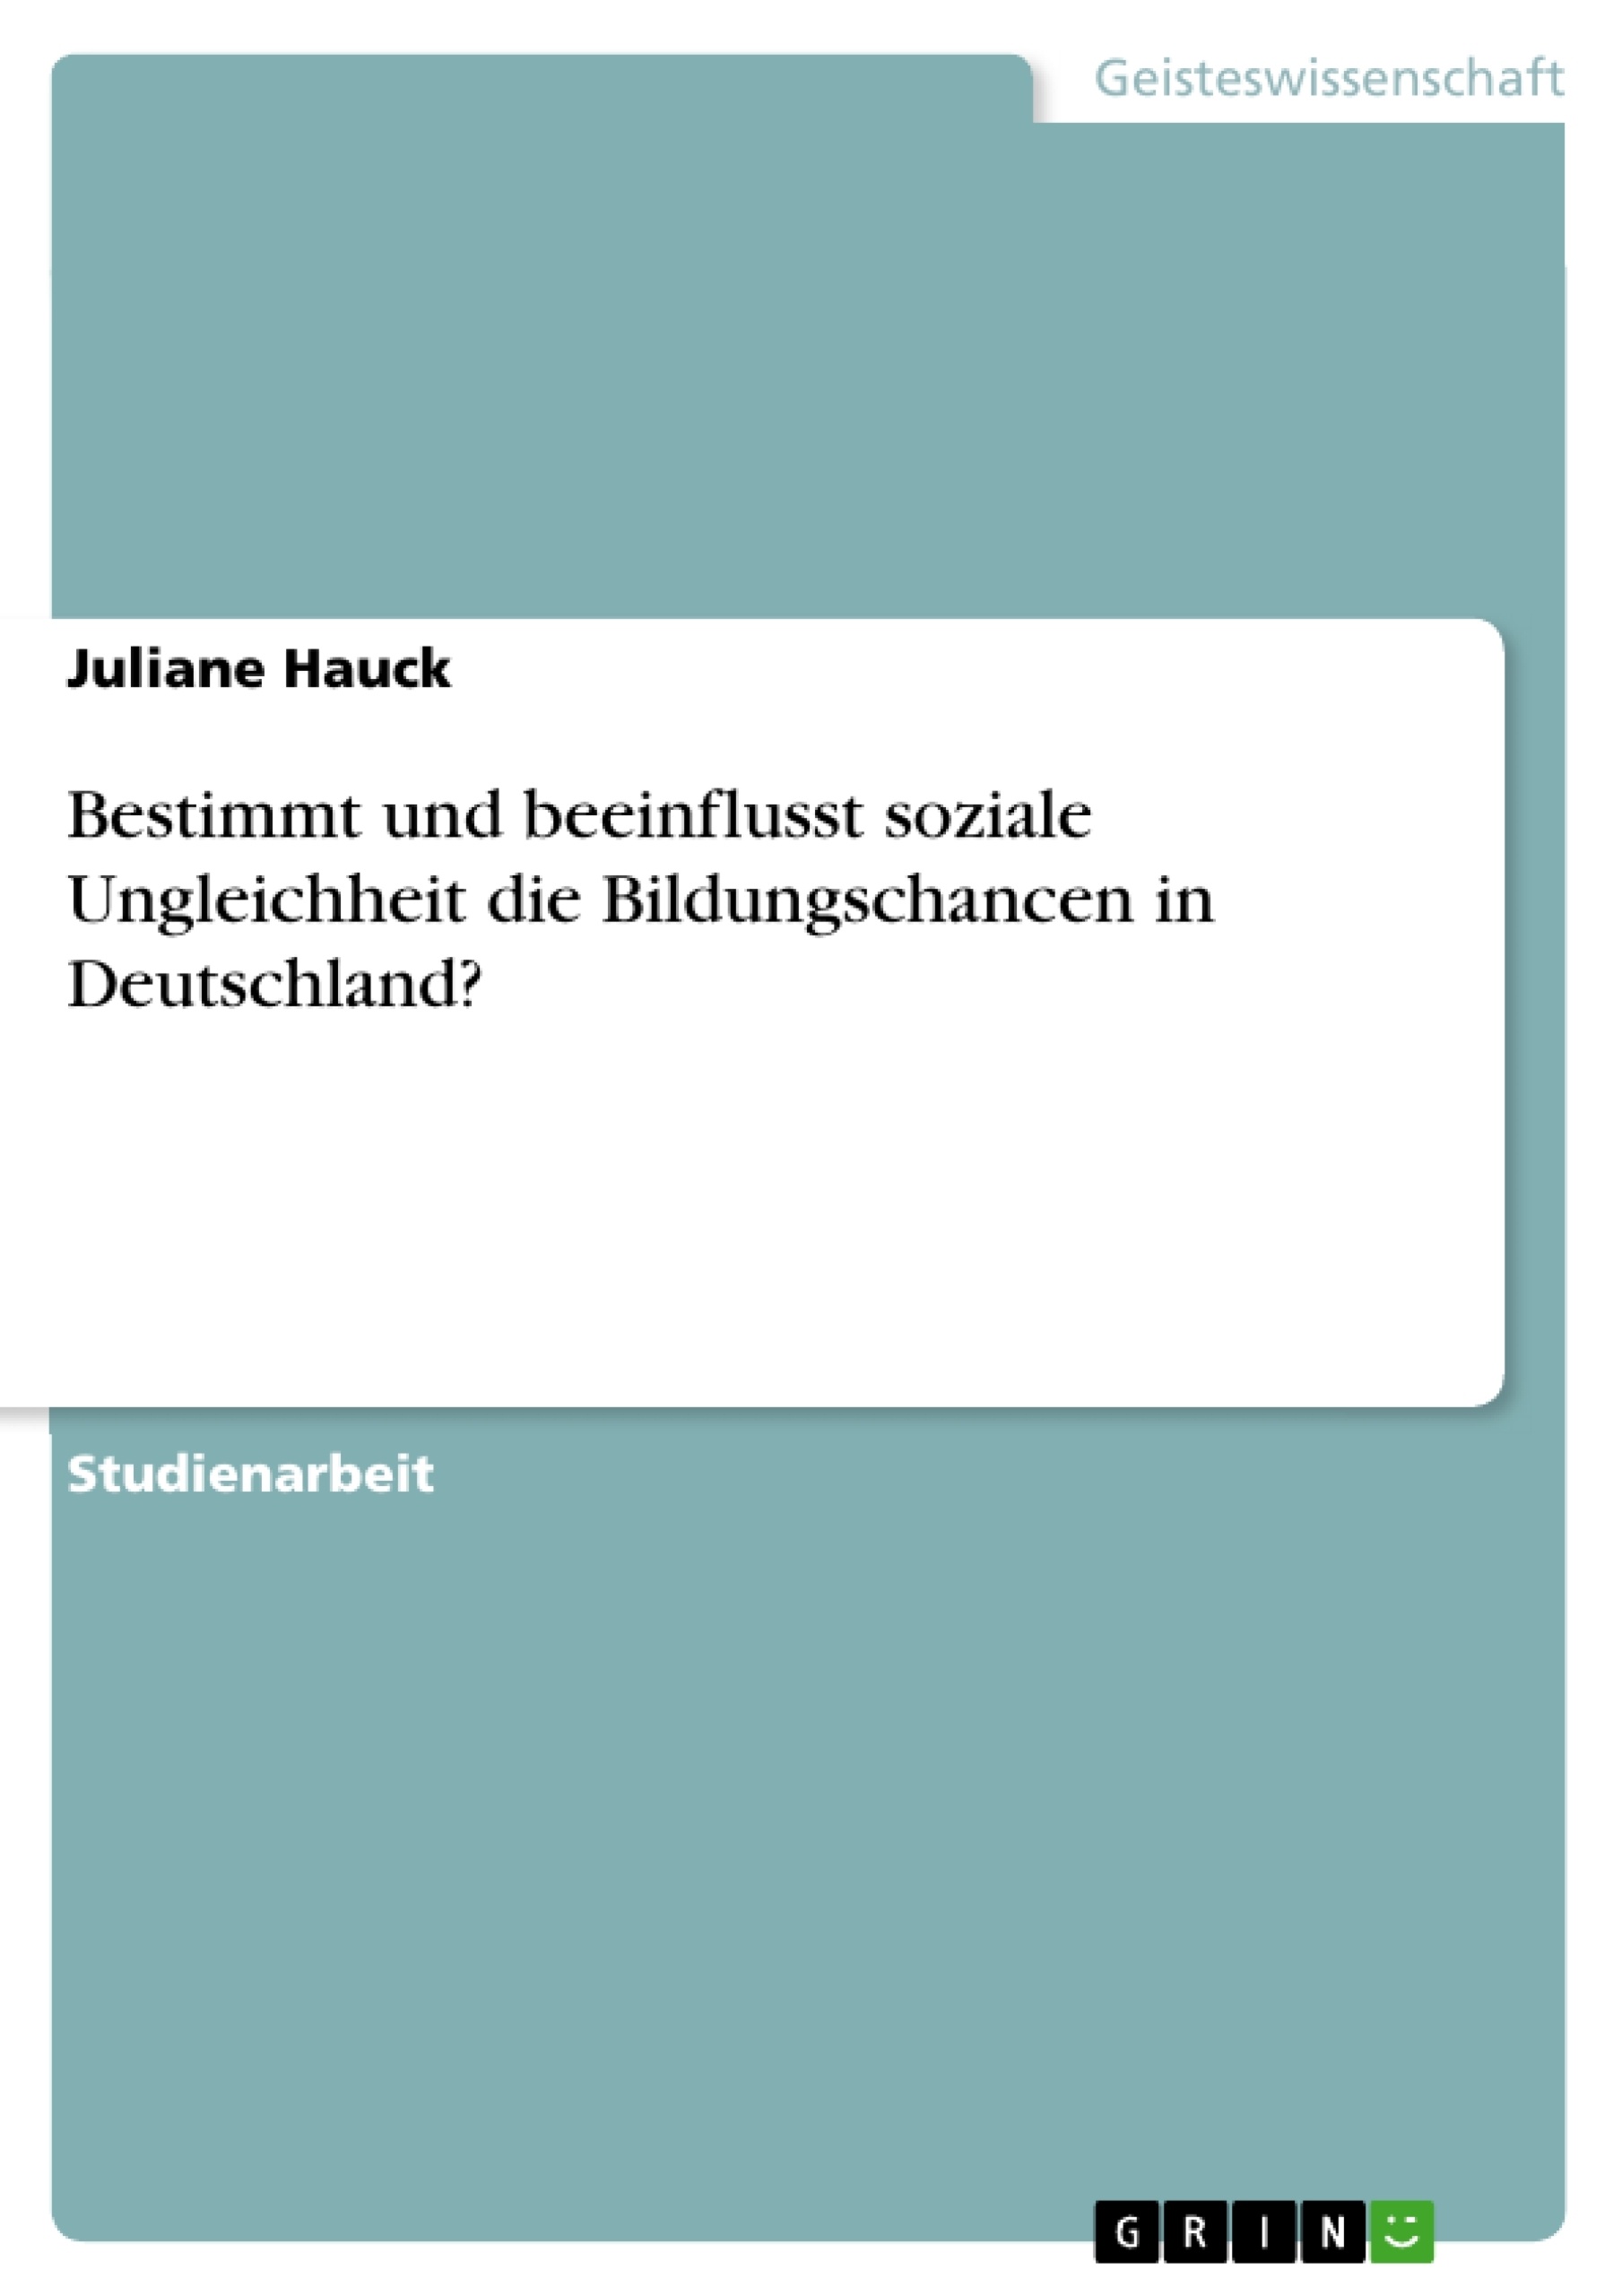 Title: Bestimmt und beeinflusst soziale Ungleichheit die Bildungschancen in Deutschland?